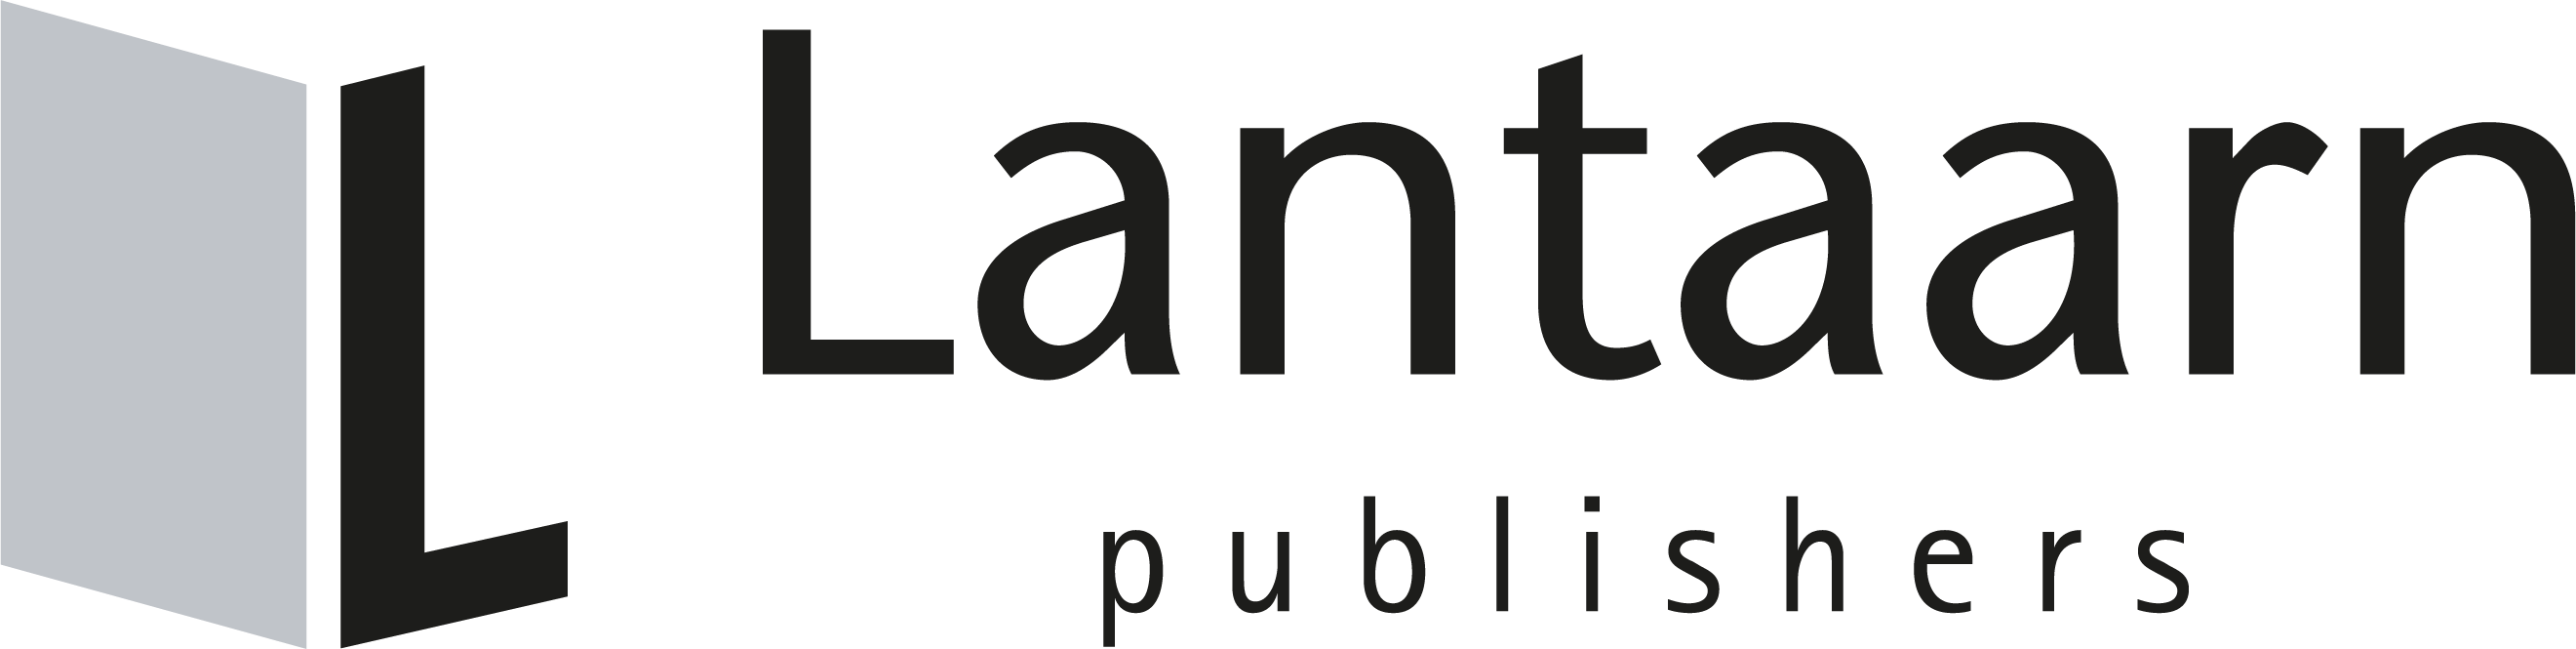 Lantaarn publishers